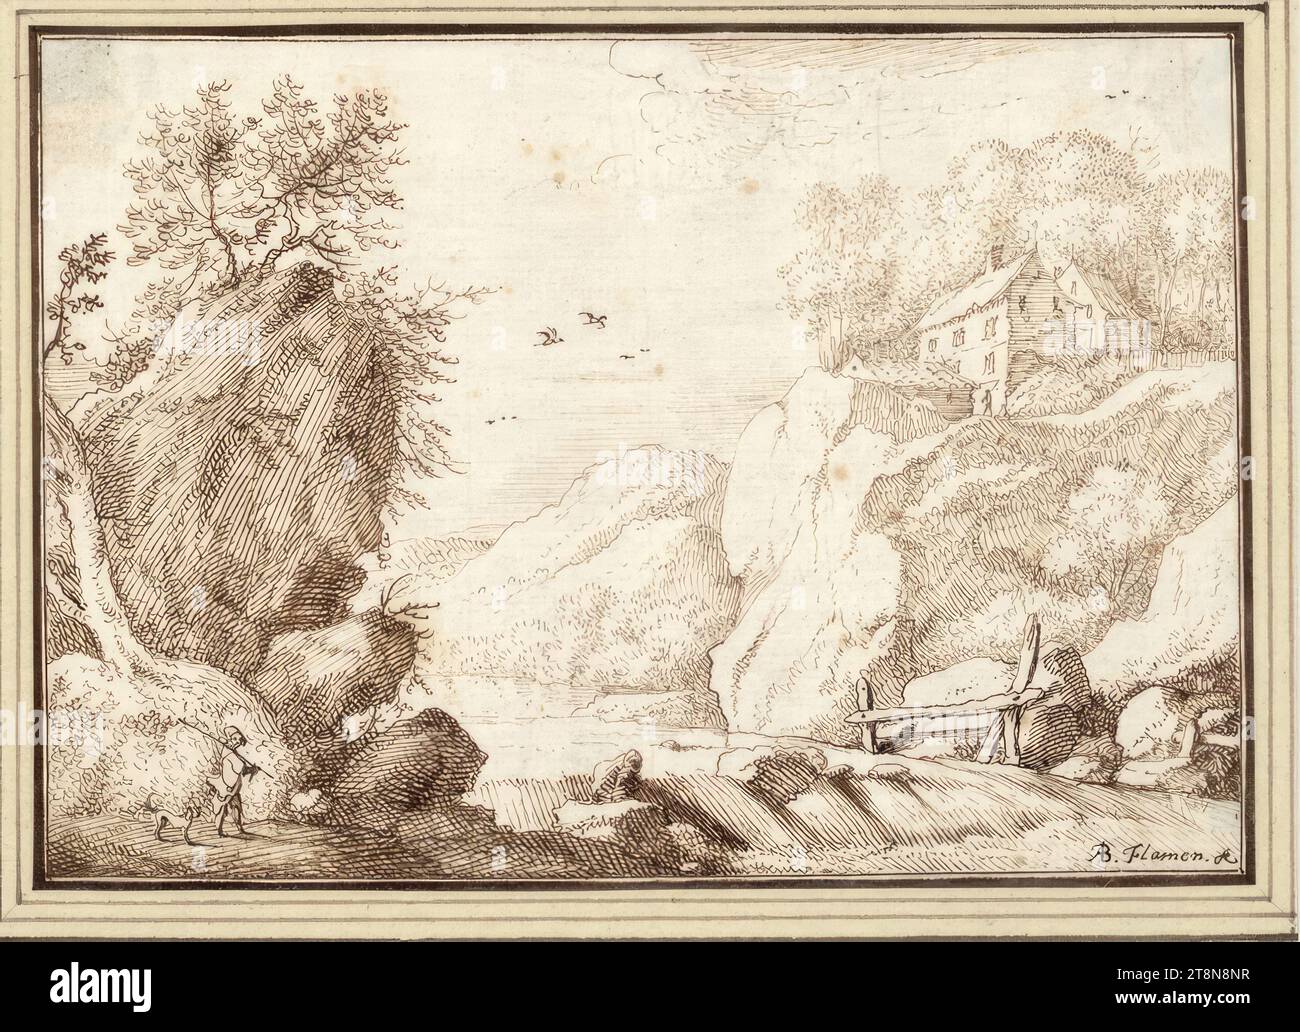 Wasserfall zwischen Felsen (II-18), '2d Livre de Dessin' mit 50 Blättern, Albert Flamen (Brügge um 1620 - nach 1693 Paris), Zeichnung, Stift und braune Tinte, 10,3 x 14,6 cm Stockfoto